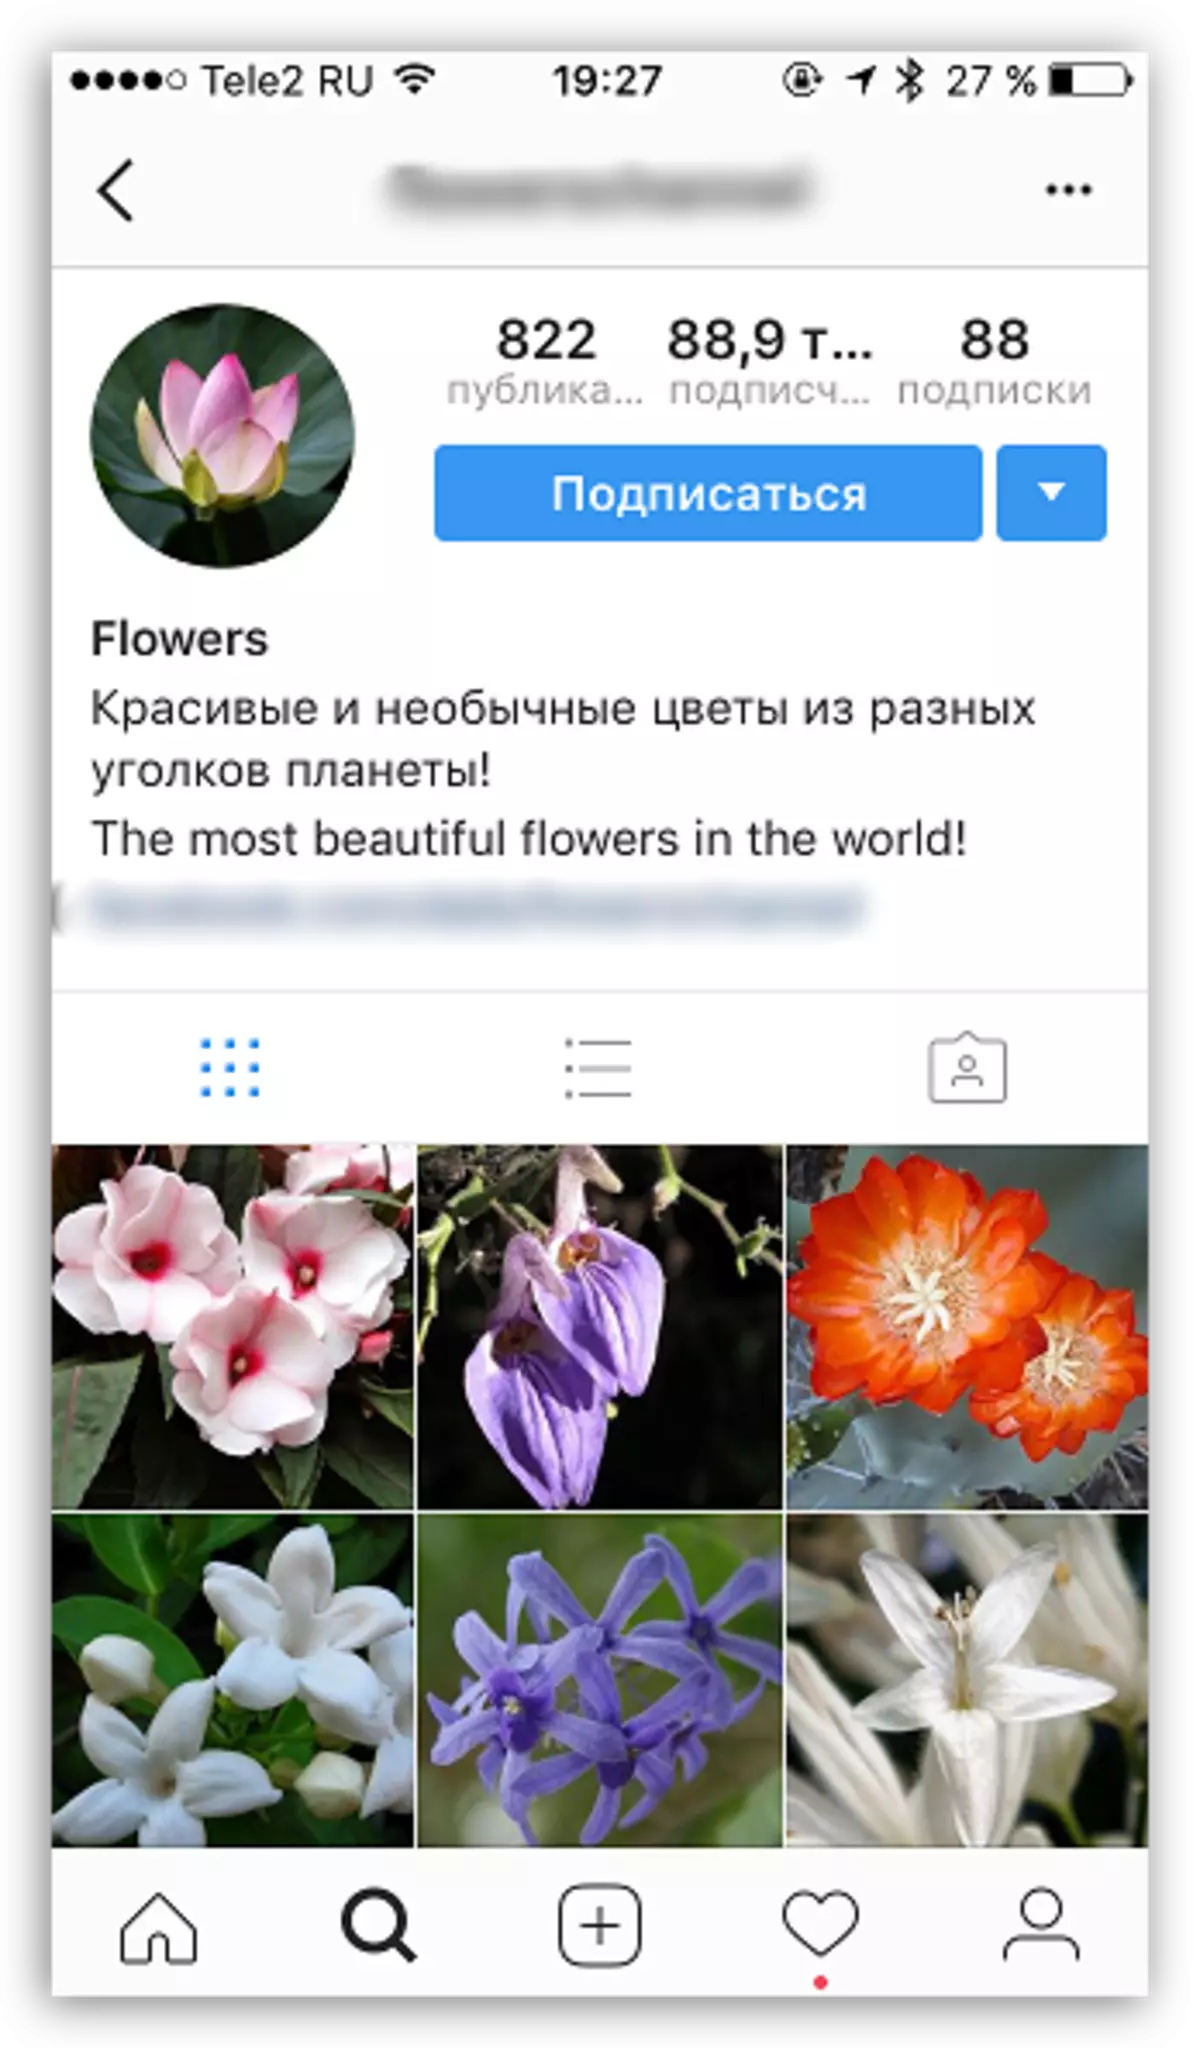 Välja föremålet för profilen i Instagram